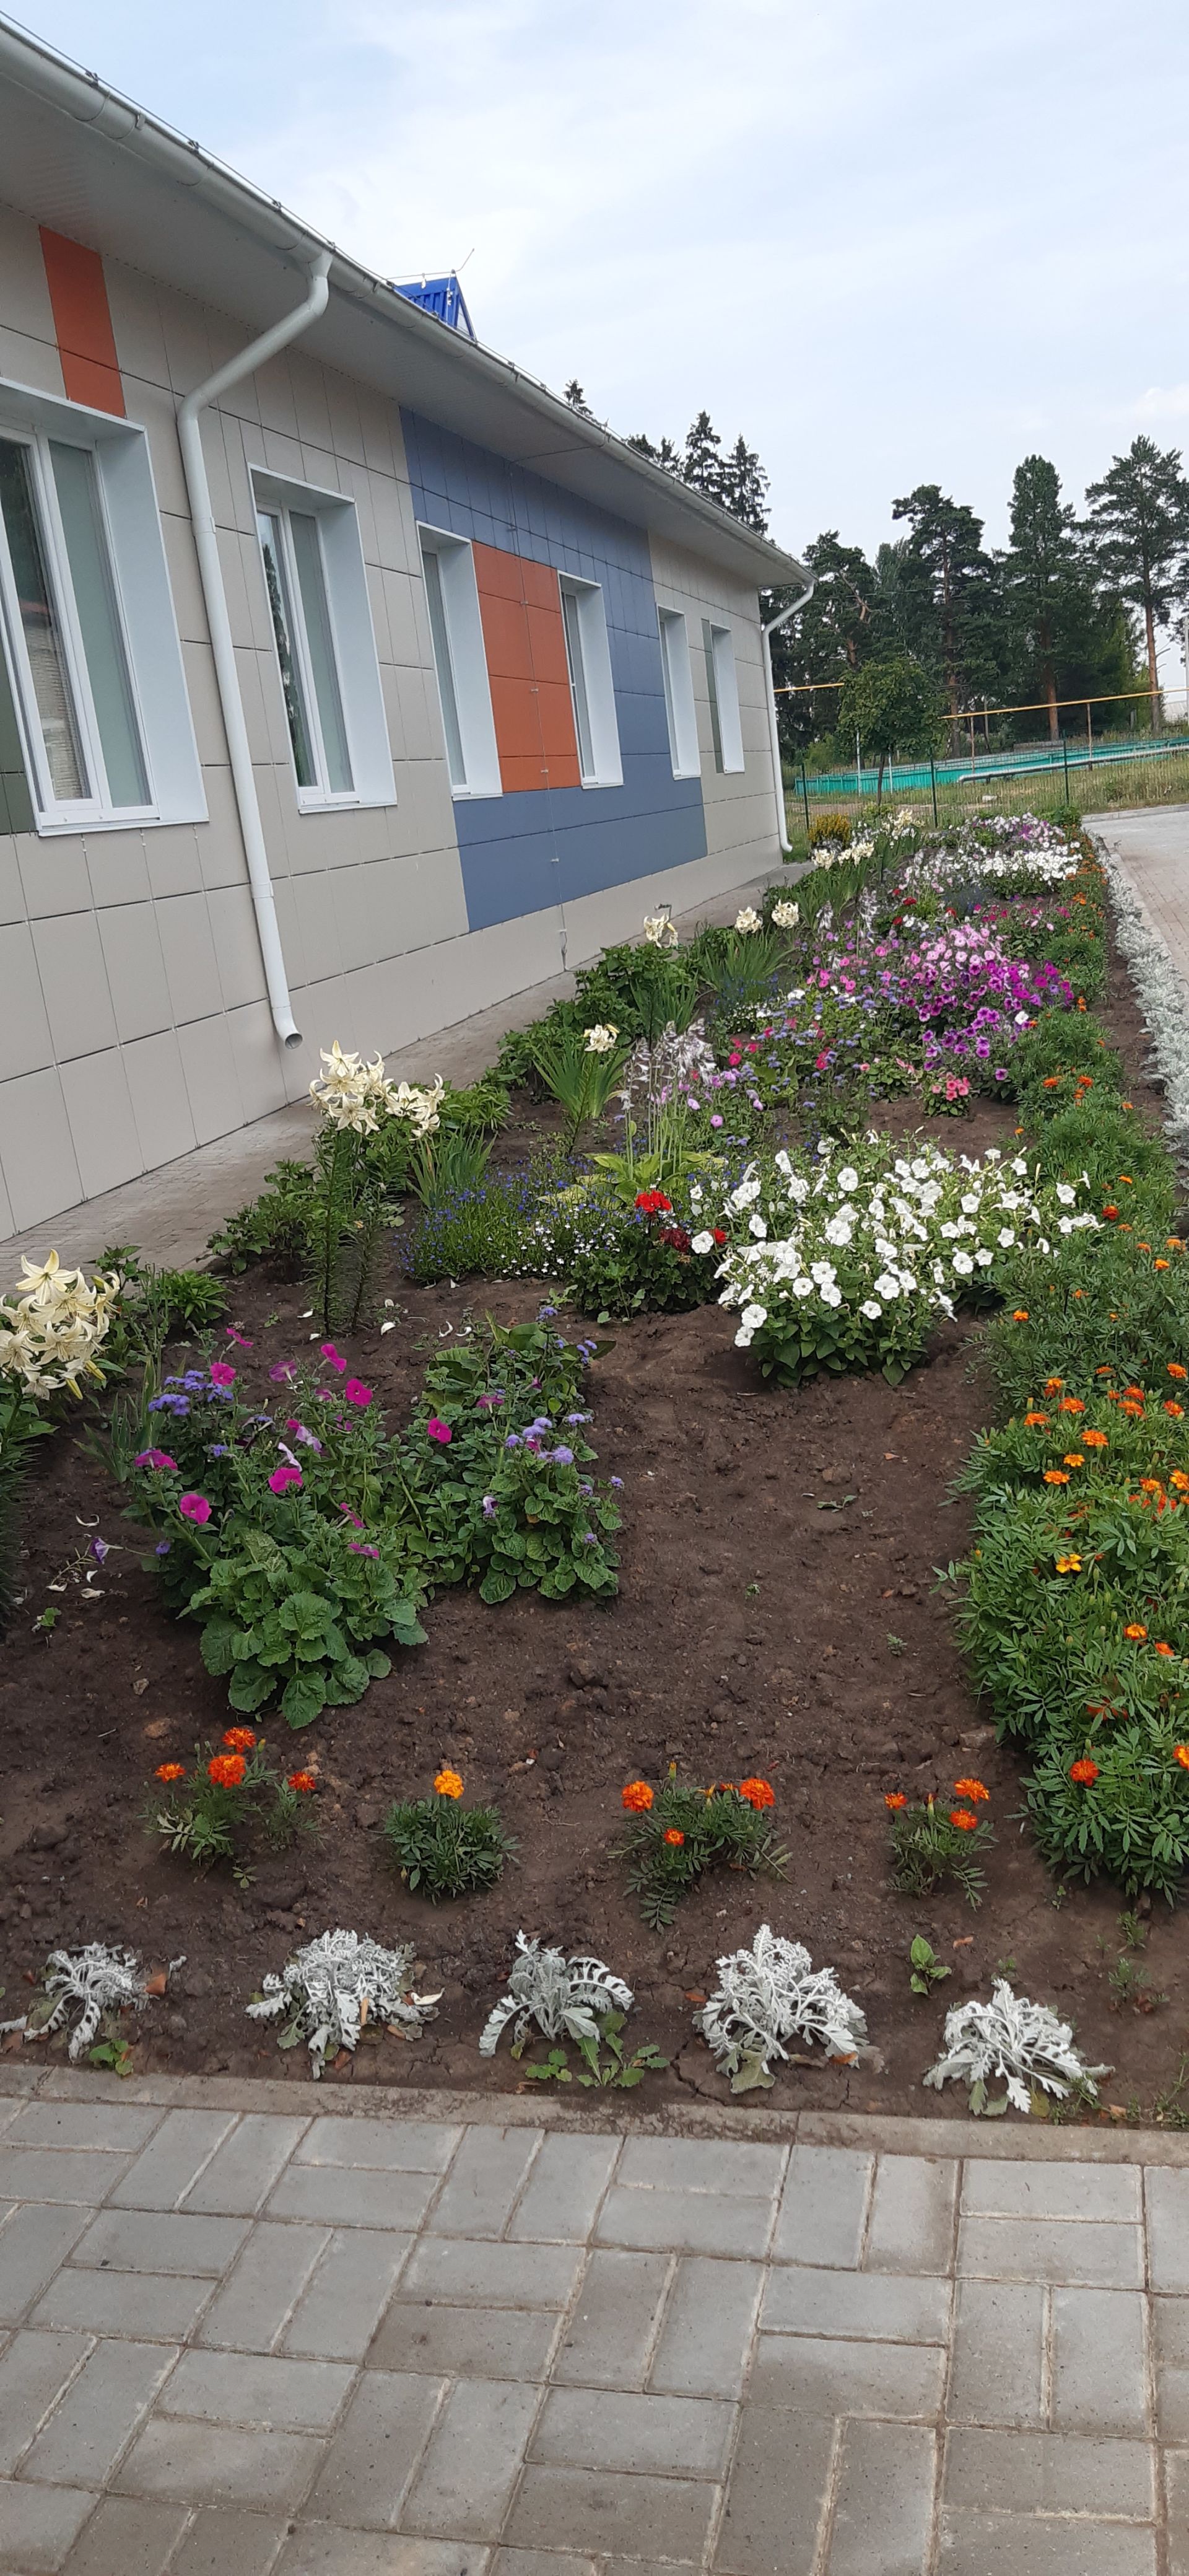 Детский сад "Рябинка" из села Мамыково принимает участие в фотоконкурсе "Цветы в моем саду"